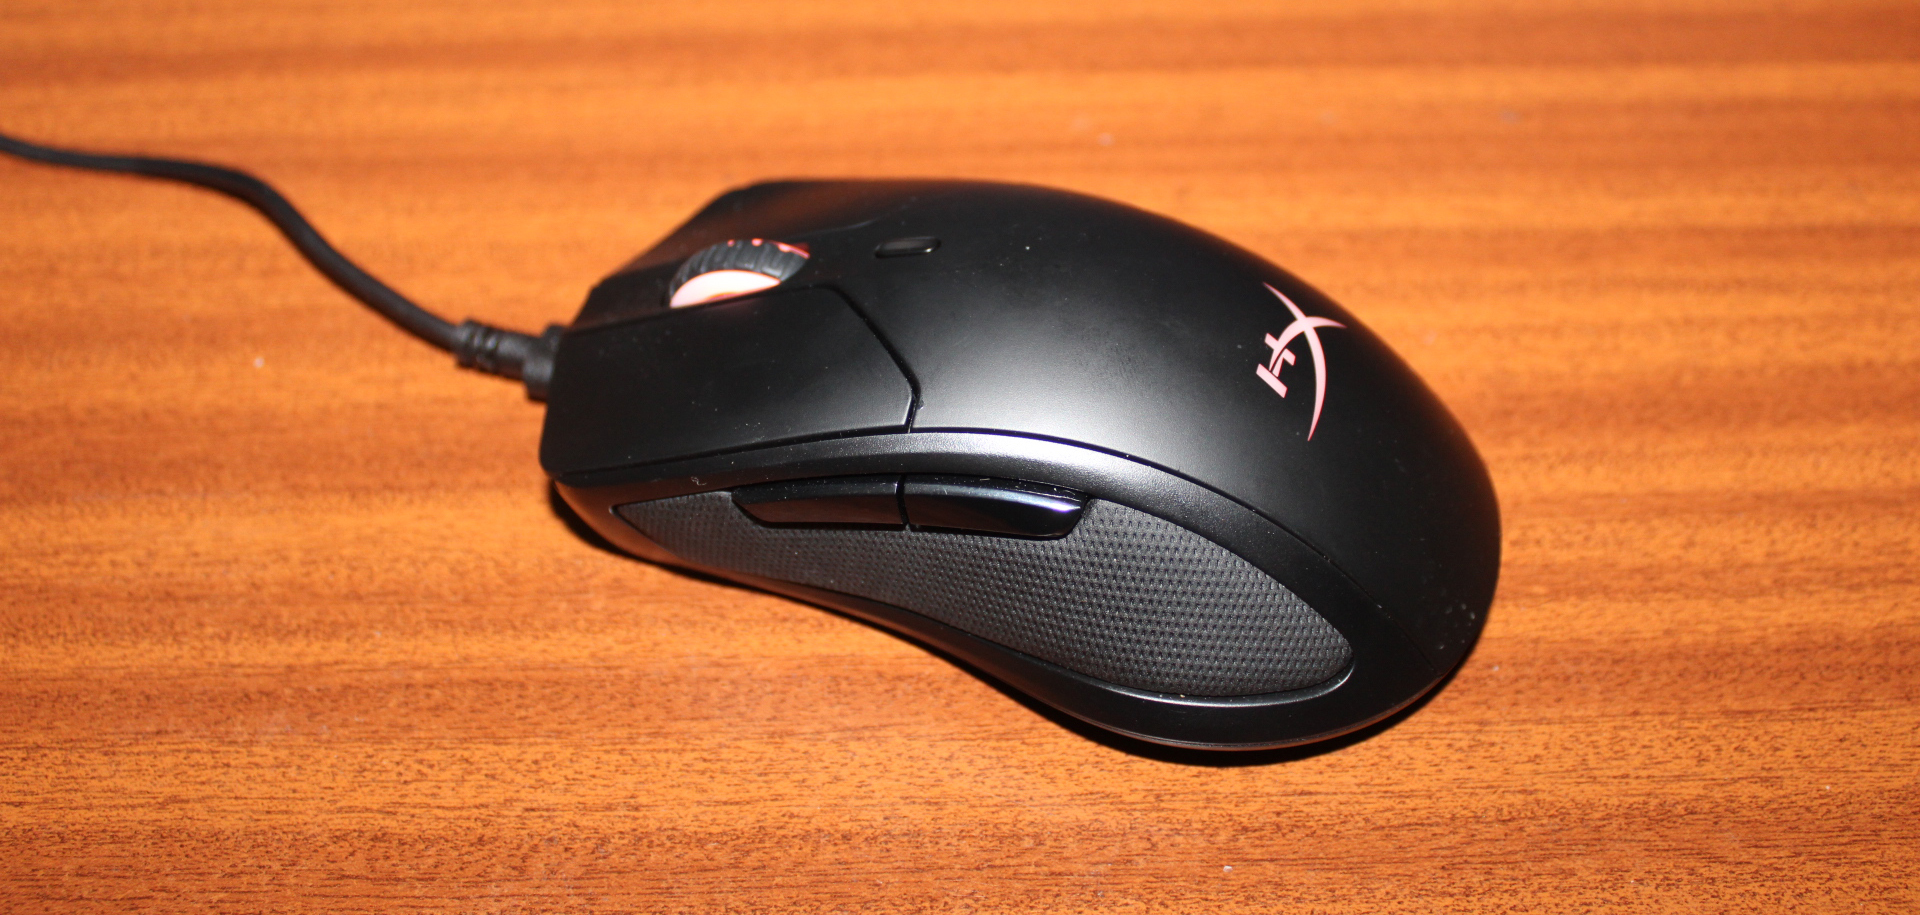 Hyper X Pulsefire Dart Wireless Gaming Mouse Review Techradar